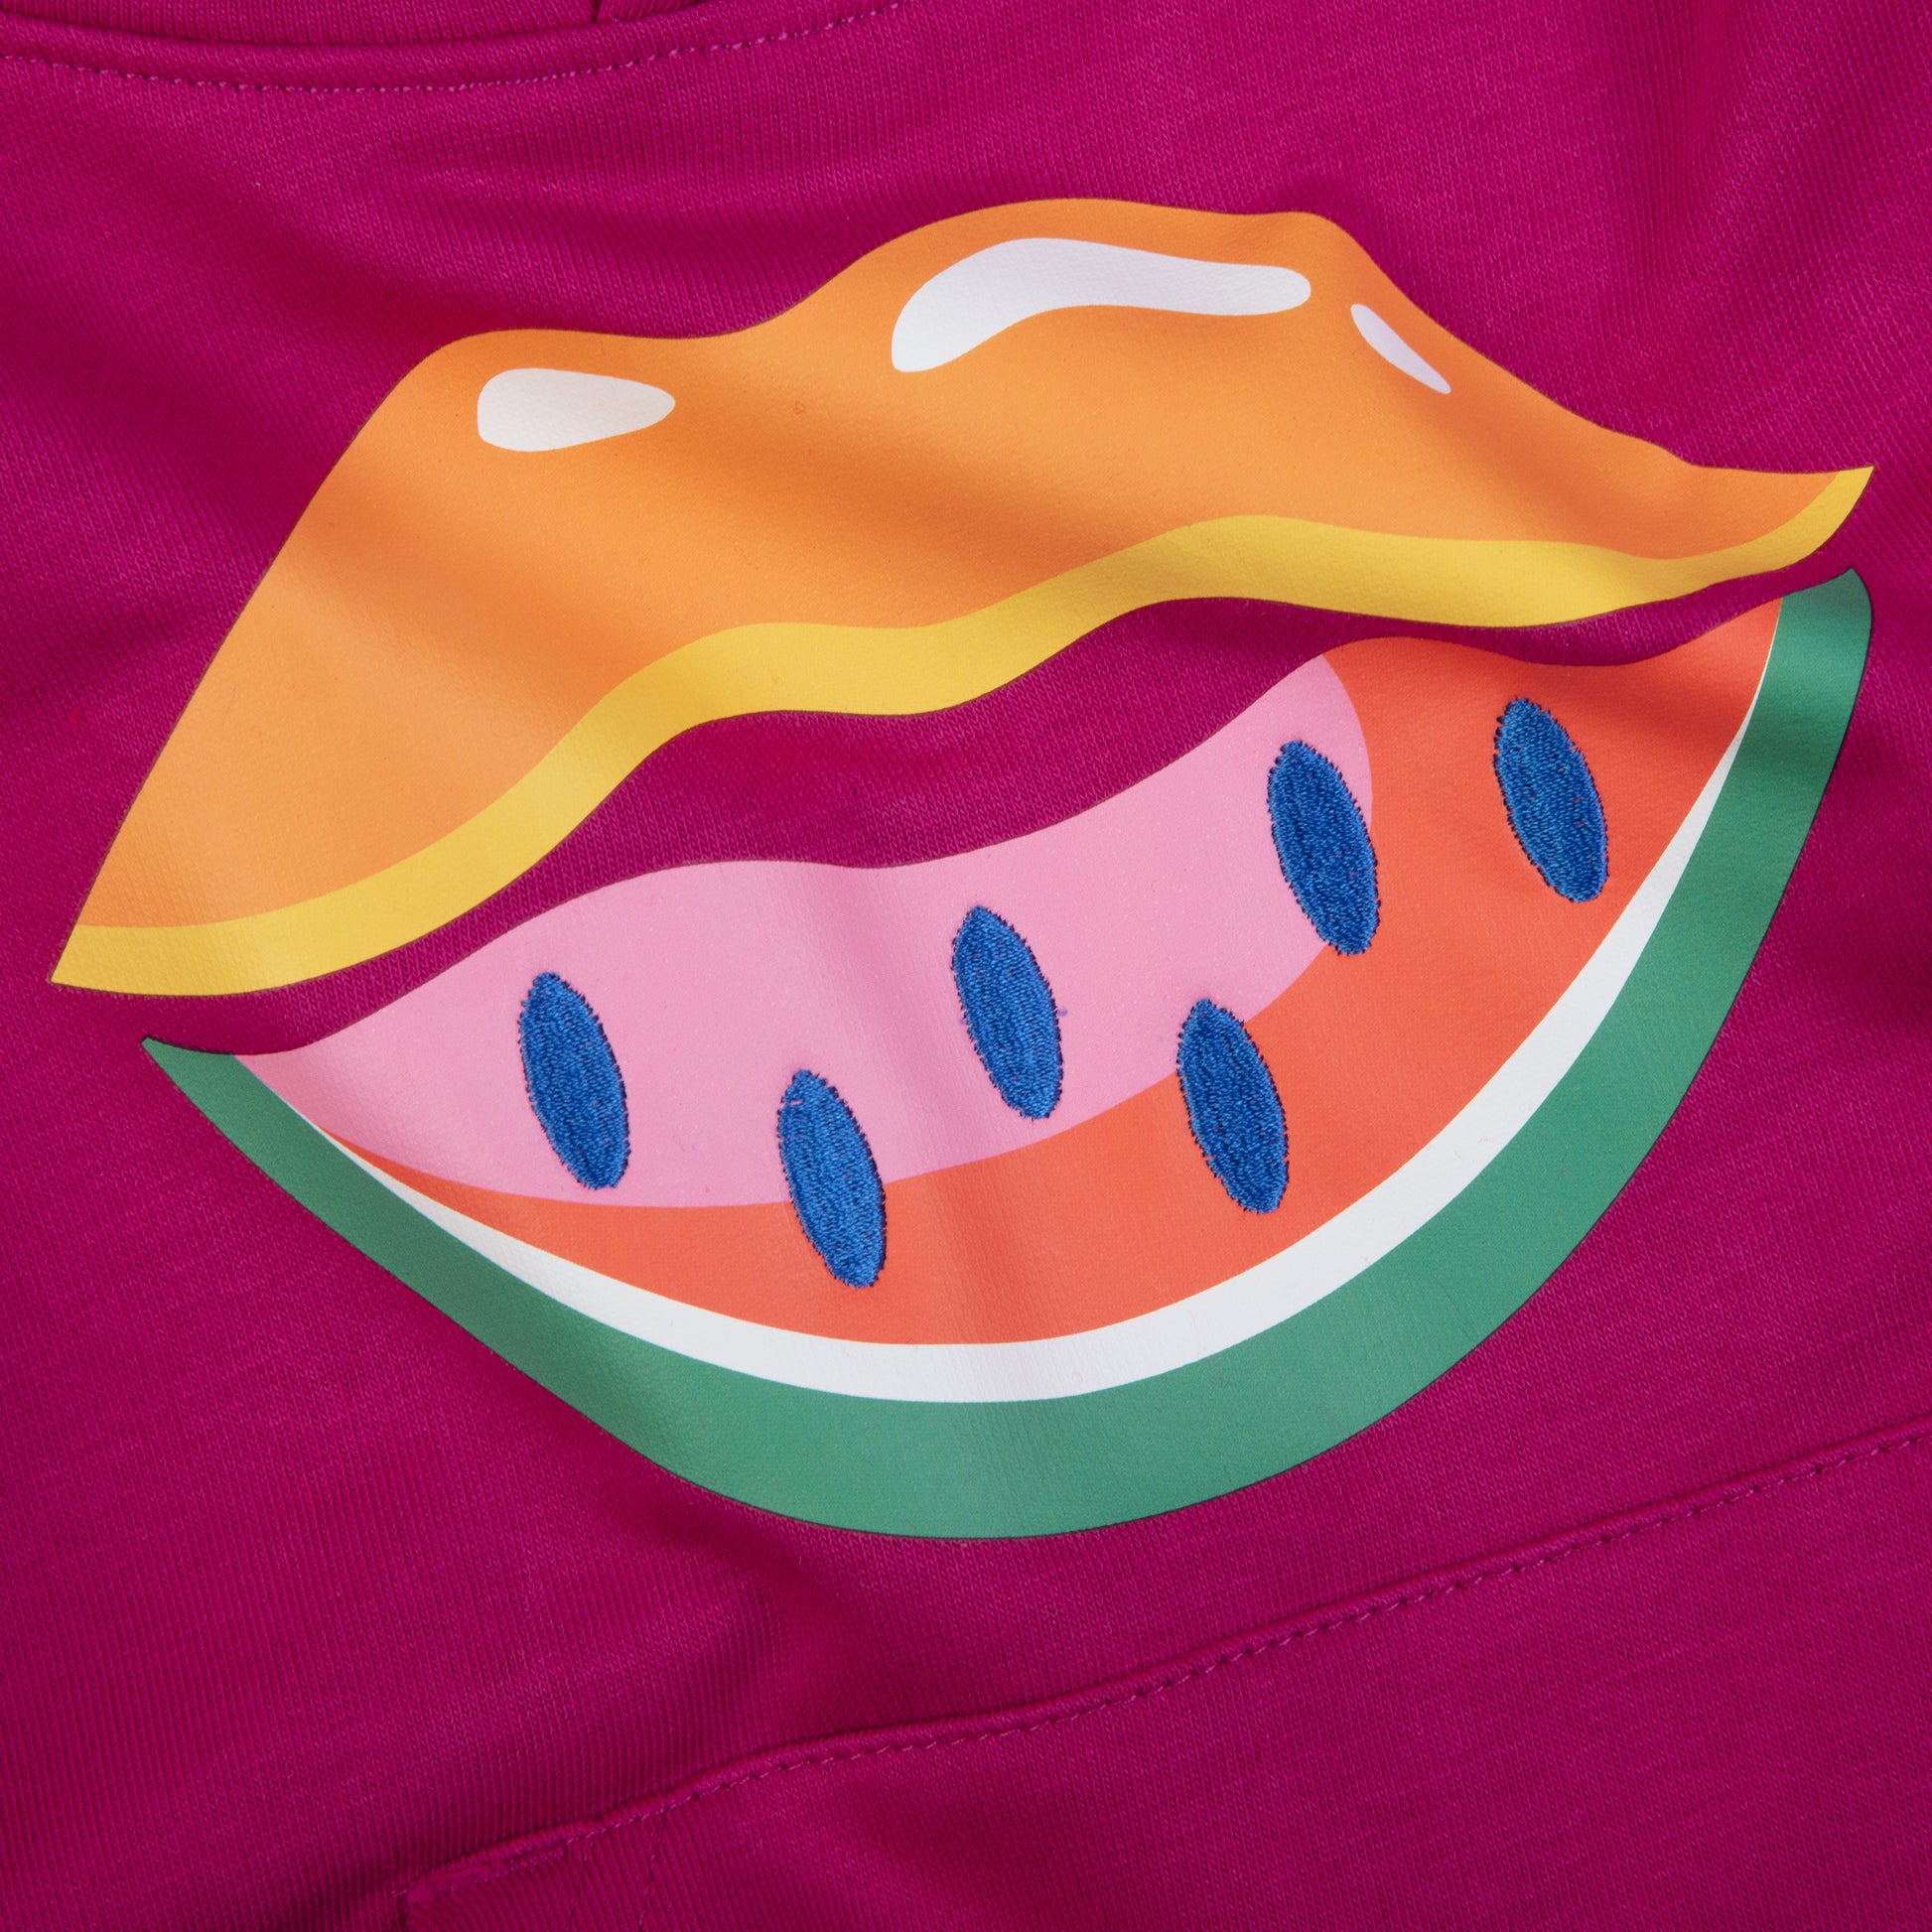 Melon Lips - Who said